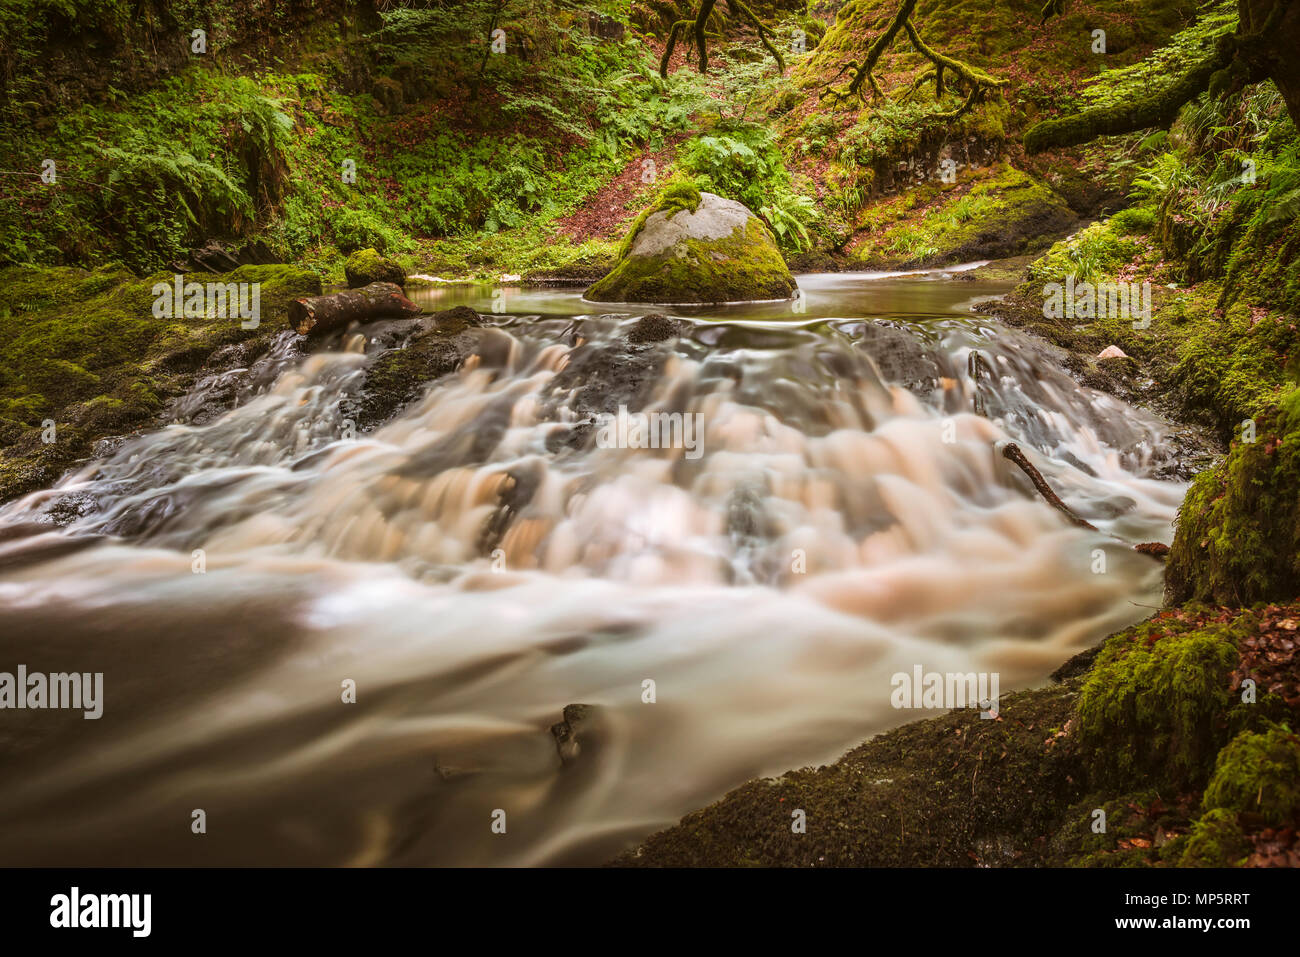 Dalcairnie falls, une petite cascade et ruisseau près de Dalmellington, Ayrshire, Scotland, UK Banque D'Images